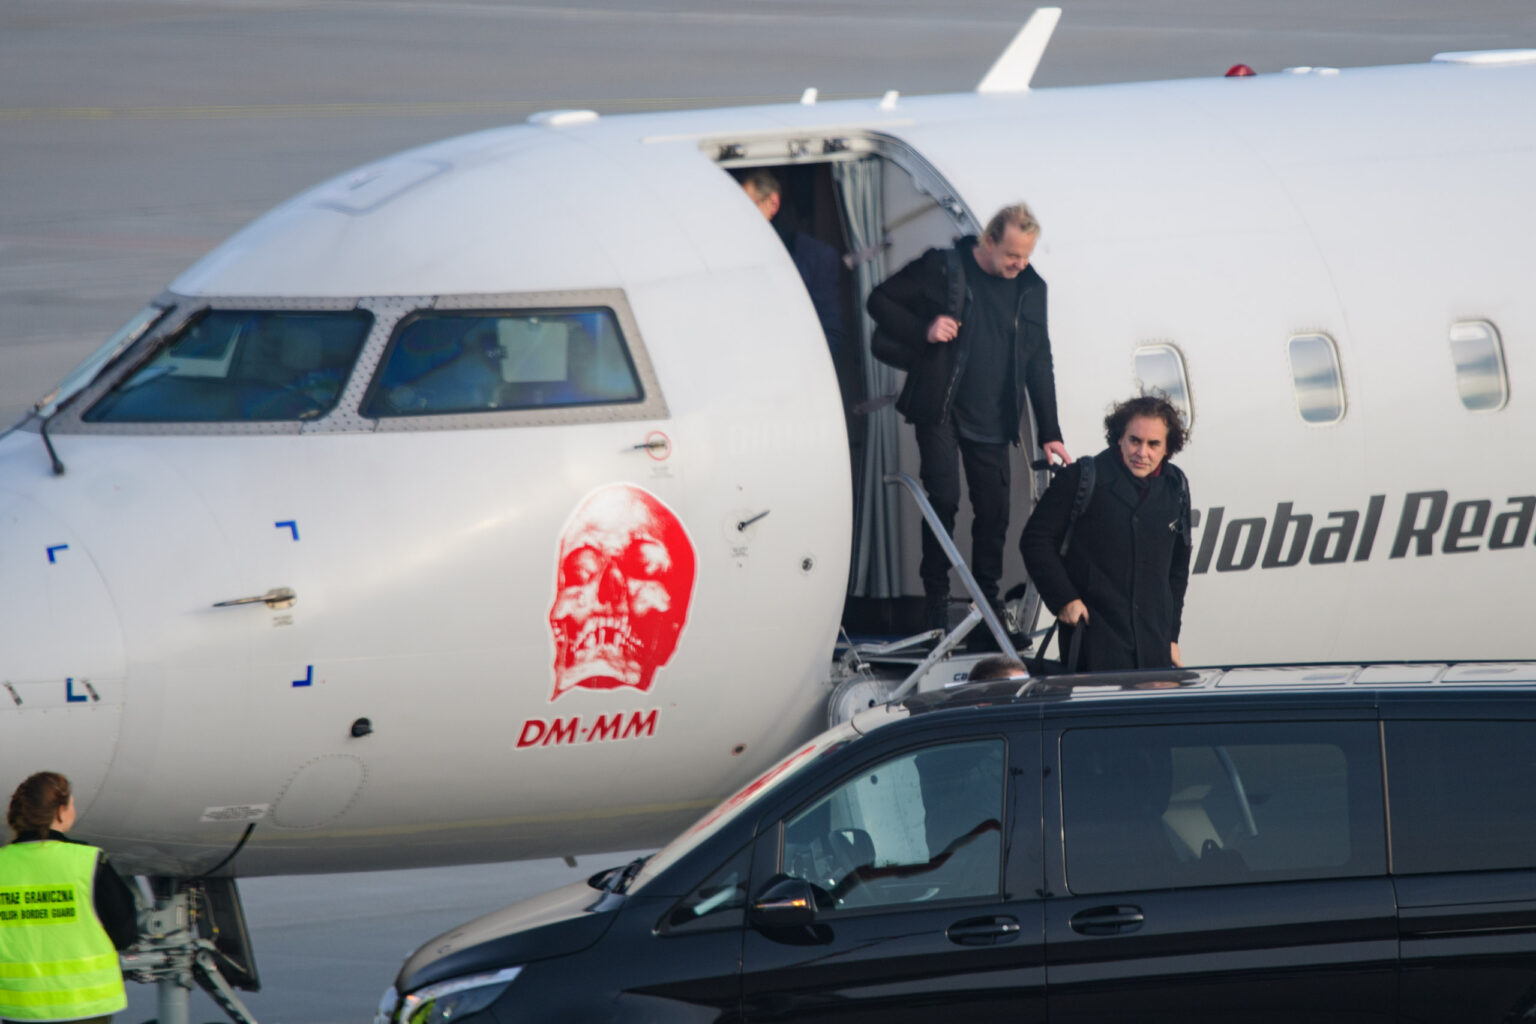 Przylot Depeche mode na lodzkie lotnisko fot Sebastian Szwajkowski 19